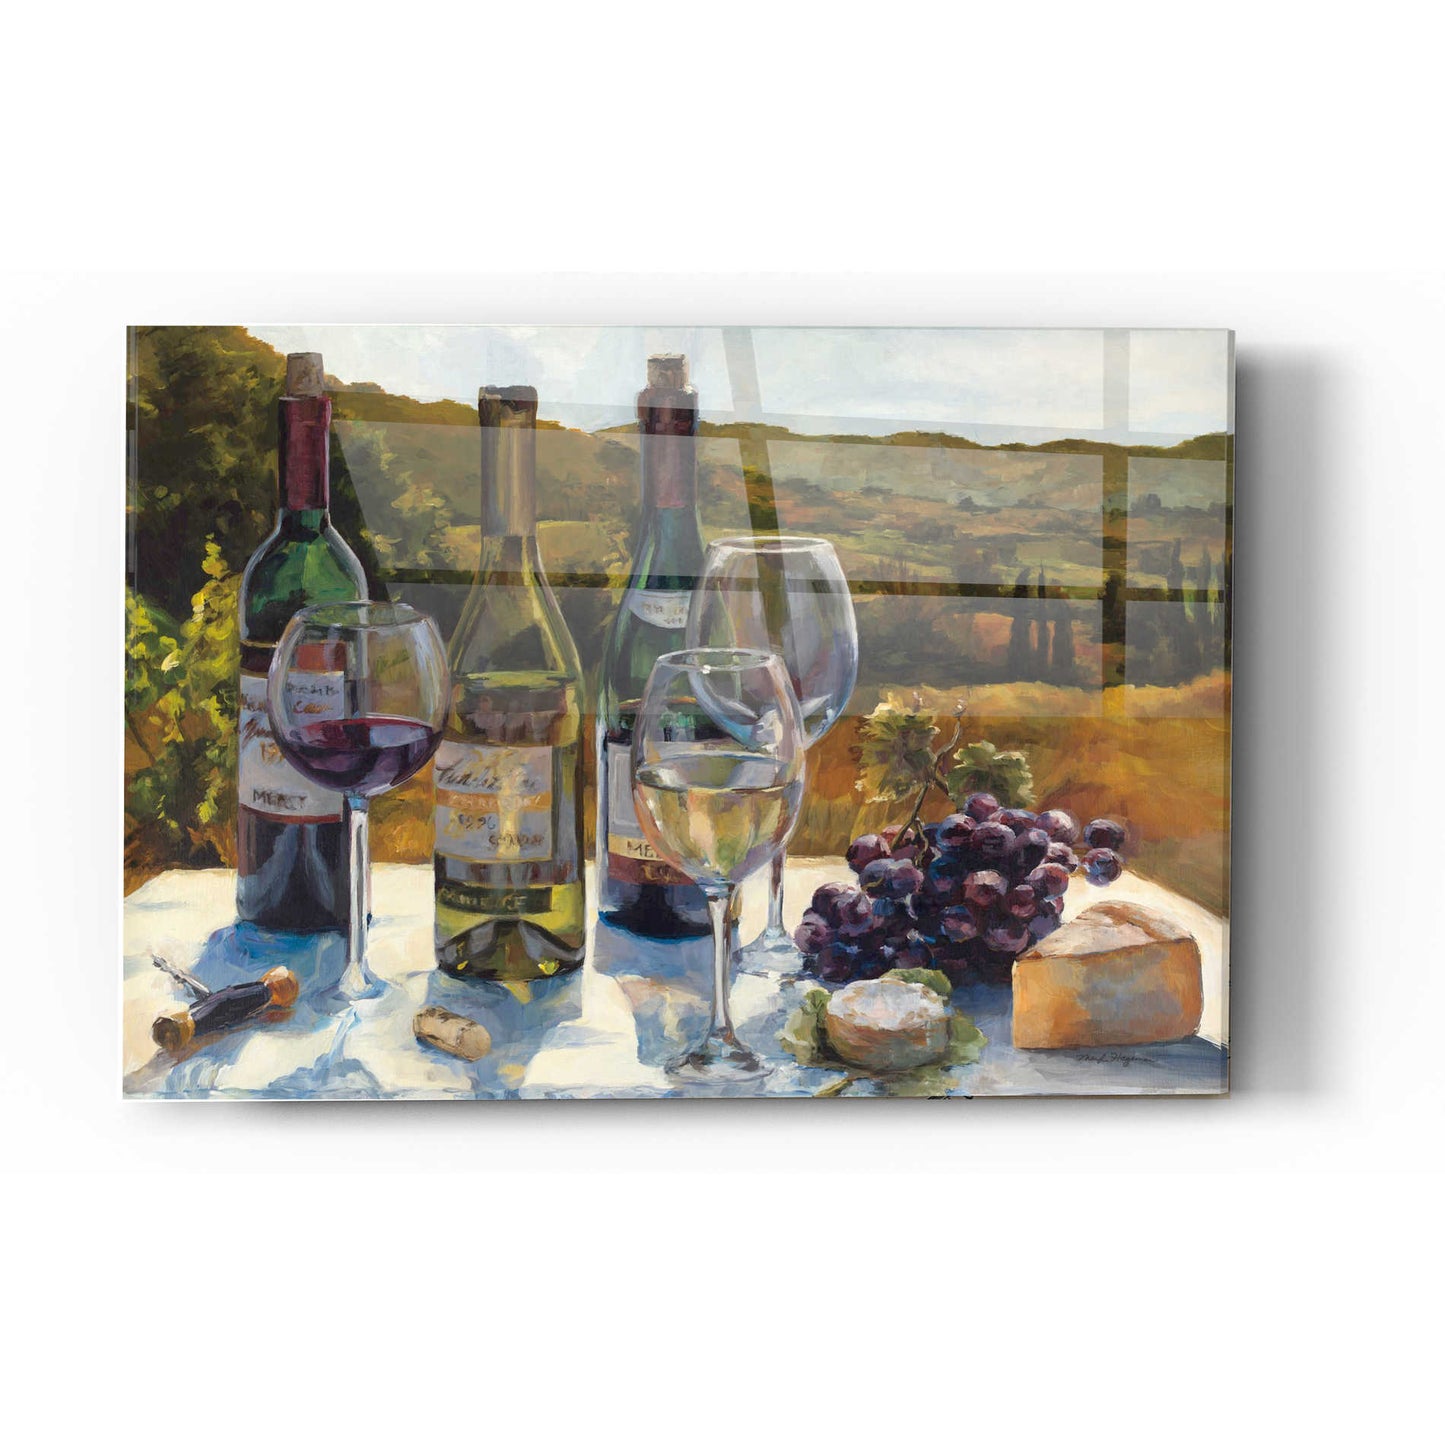 Epic Art 'A Wine Tasting' by Marilyn Hageman, Acrylic Glass Wall Art,16x24